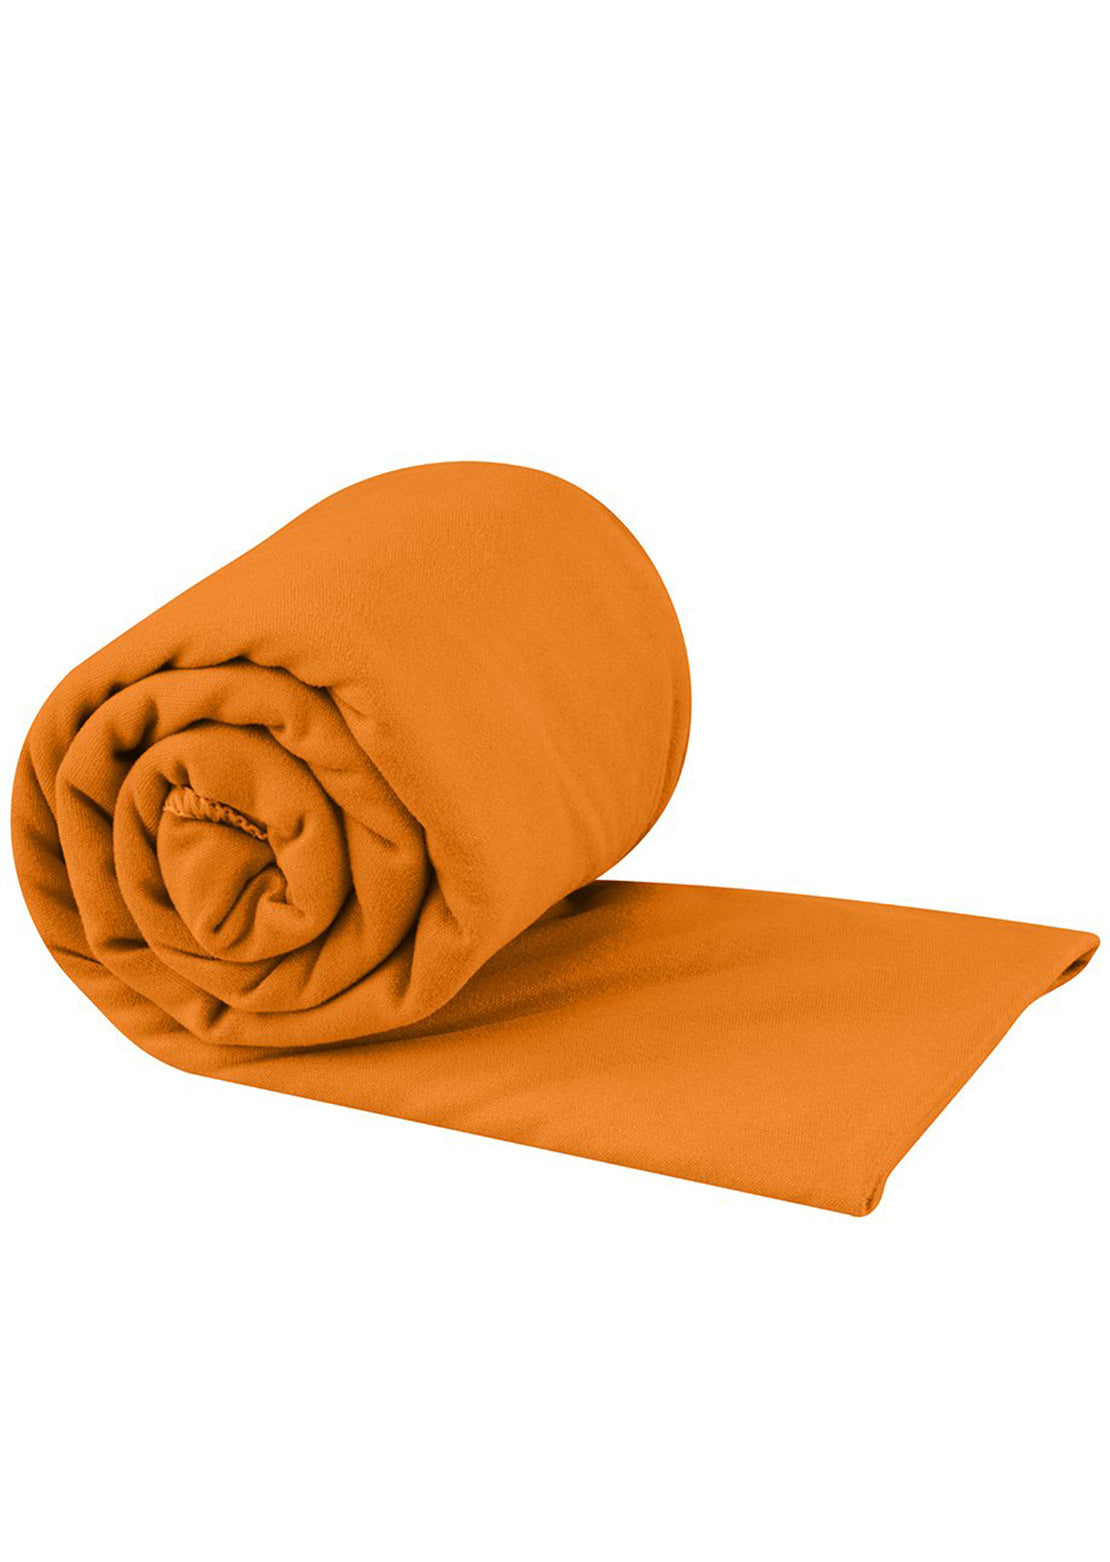 Sea To Summit Pocket Towel - Large Orange